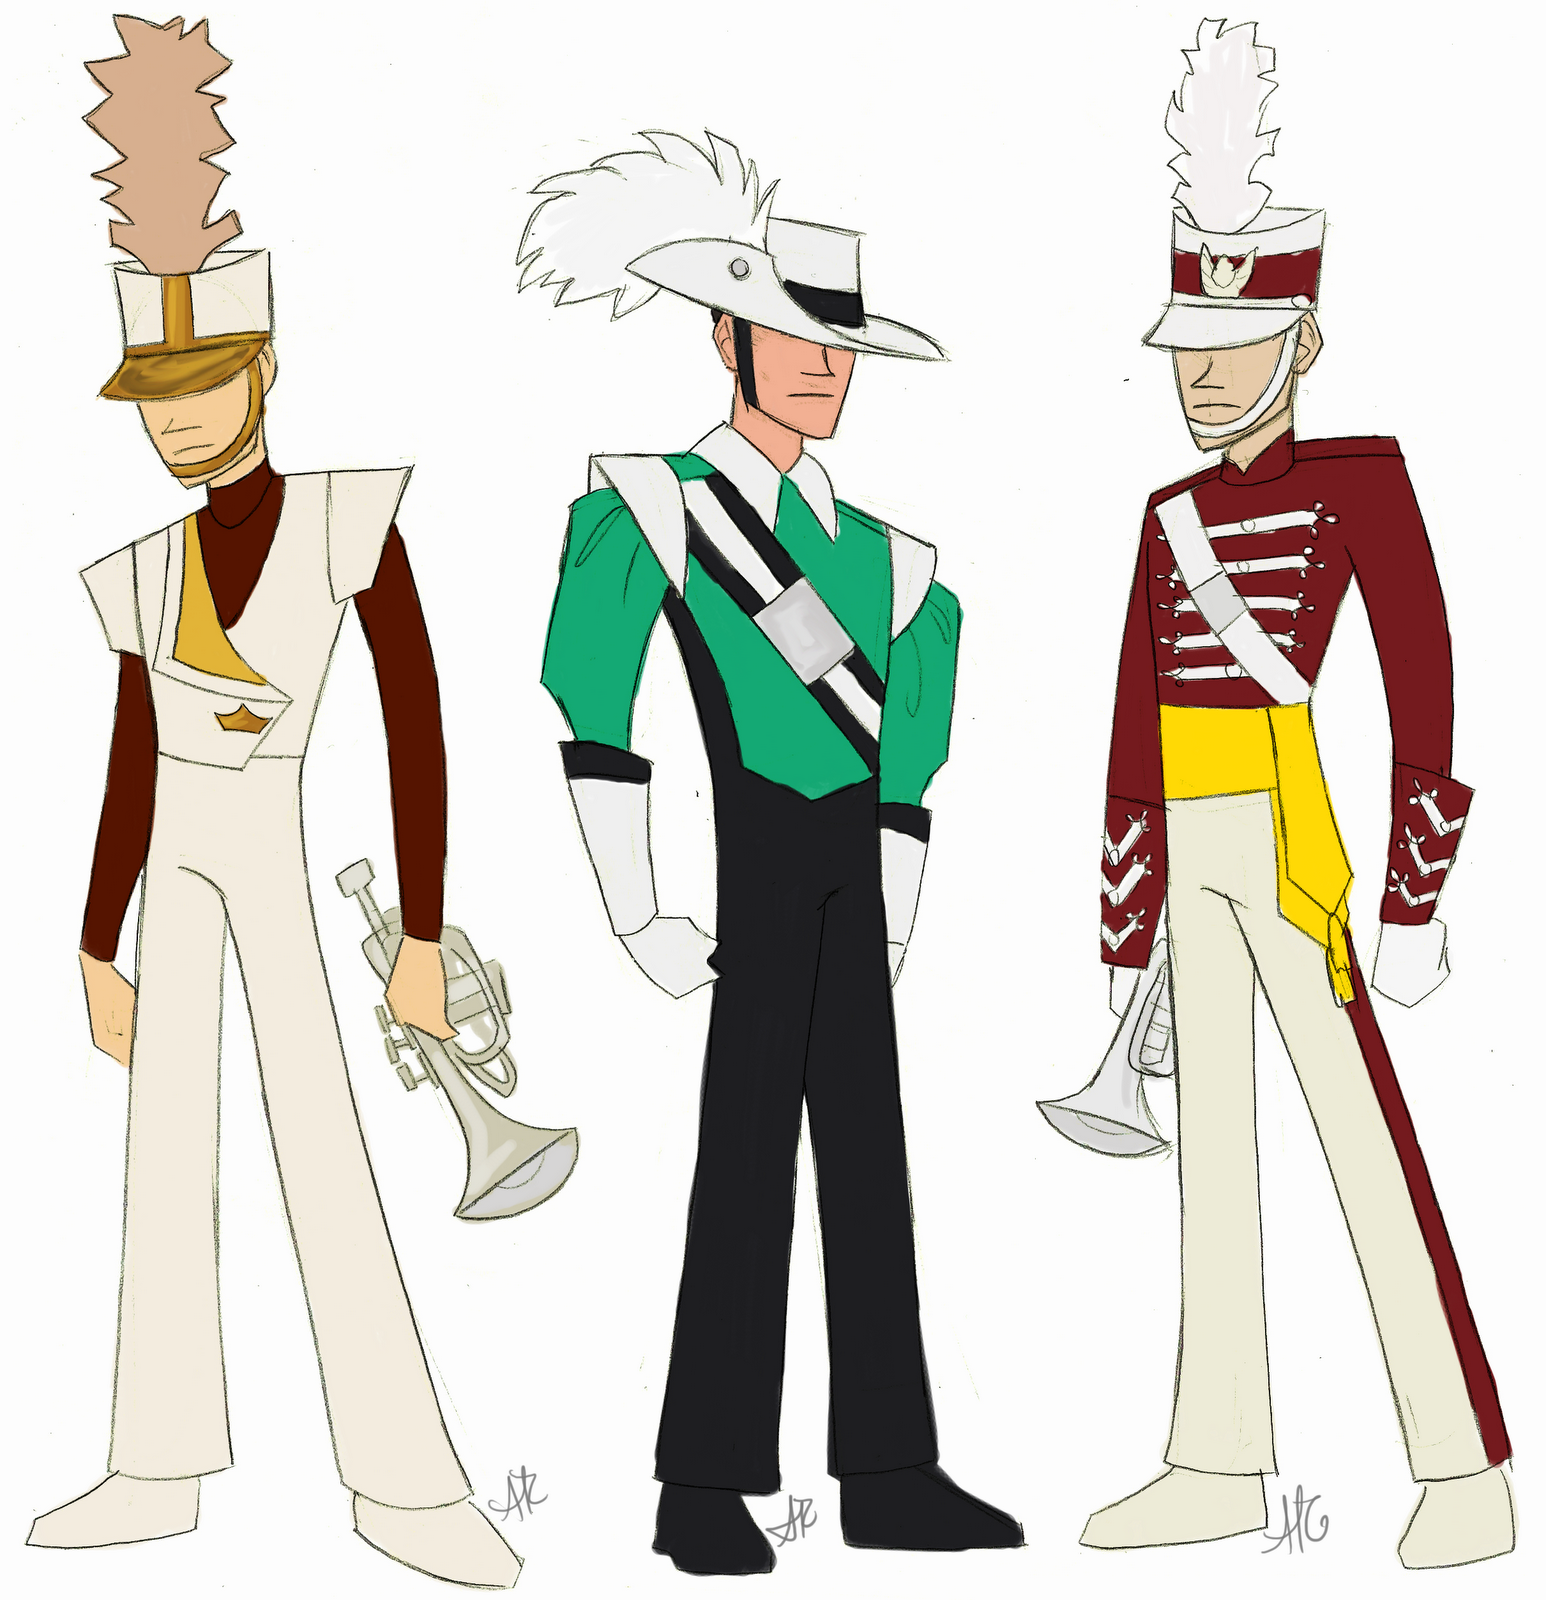 Anthony's Drum Corps Uniform Icons